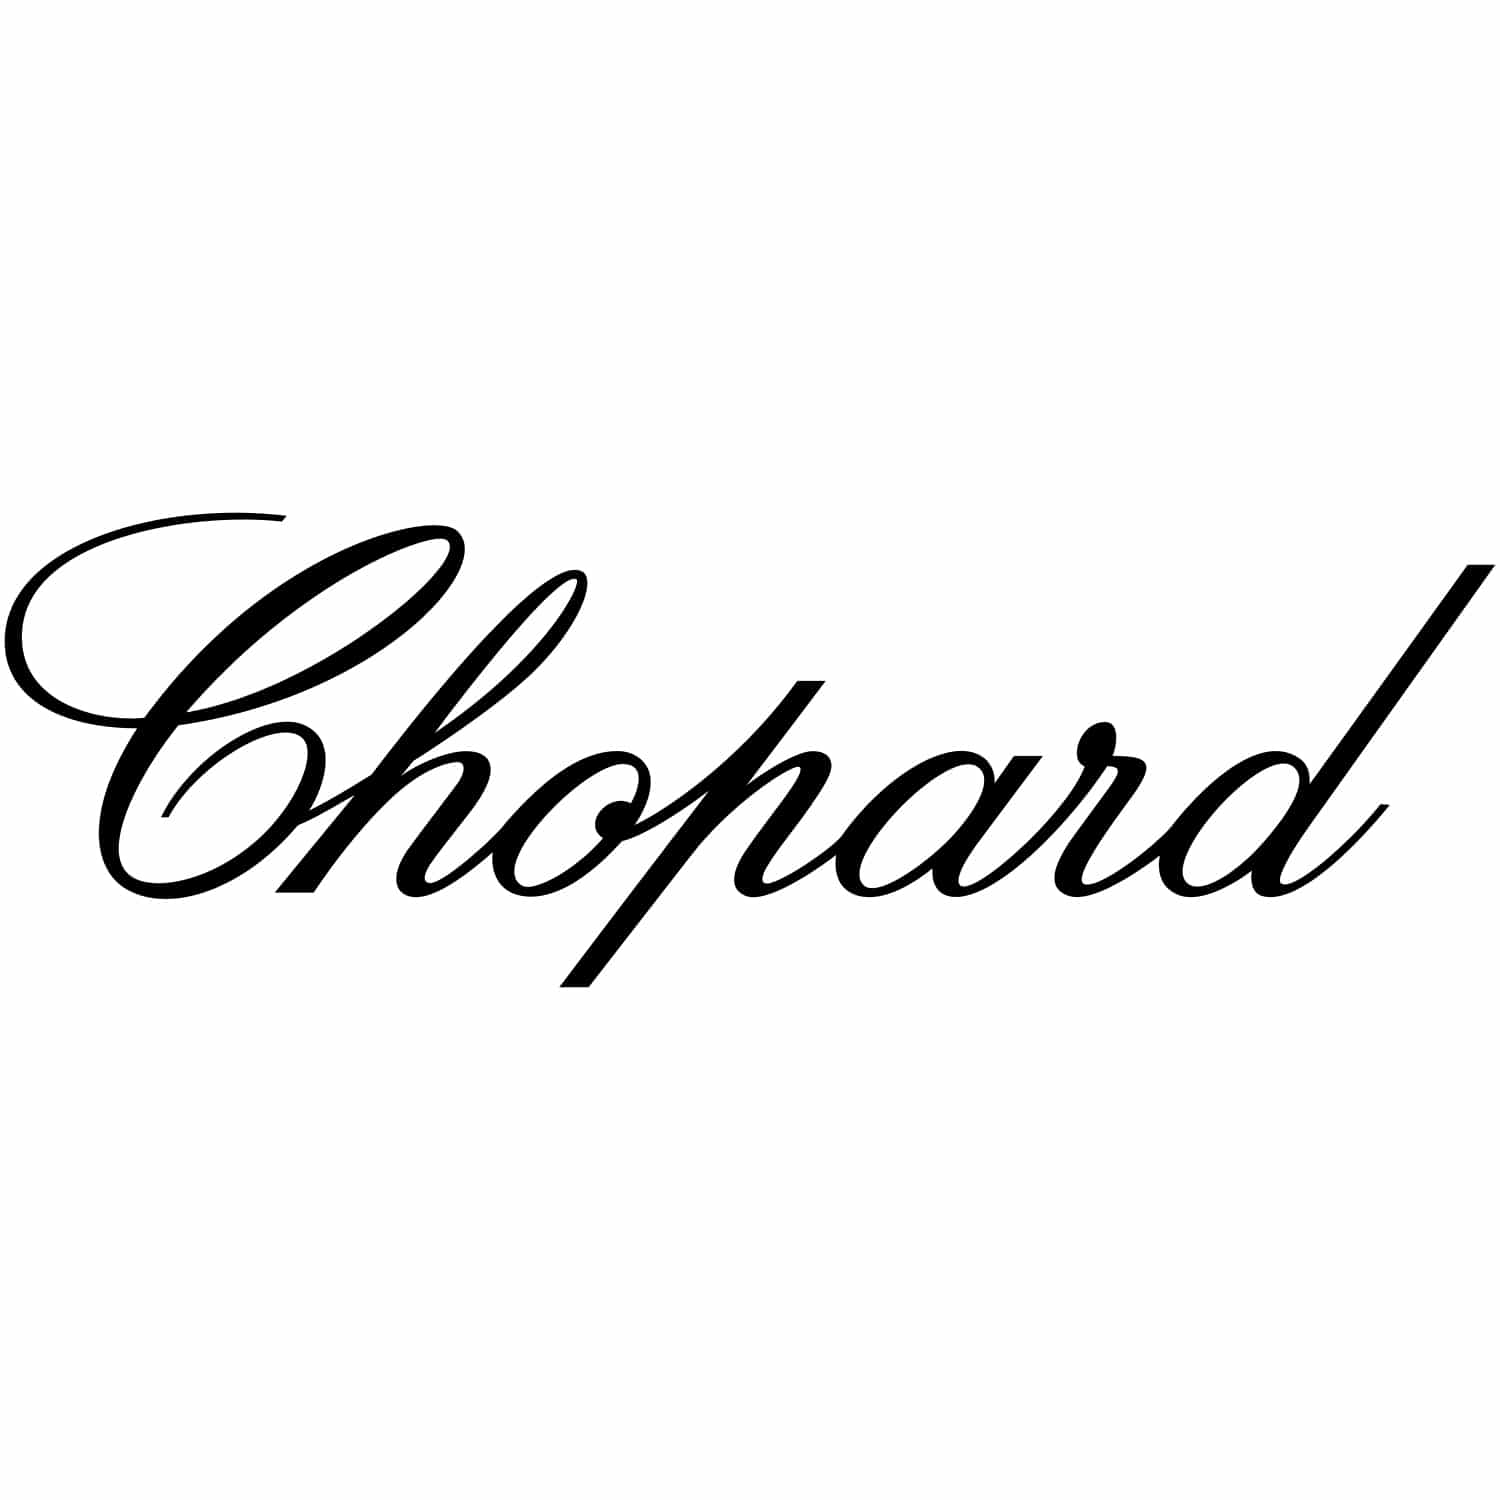 Chopard_logo